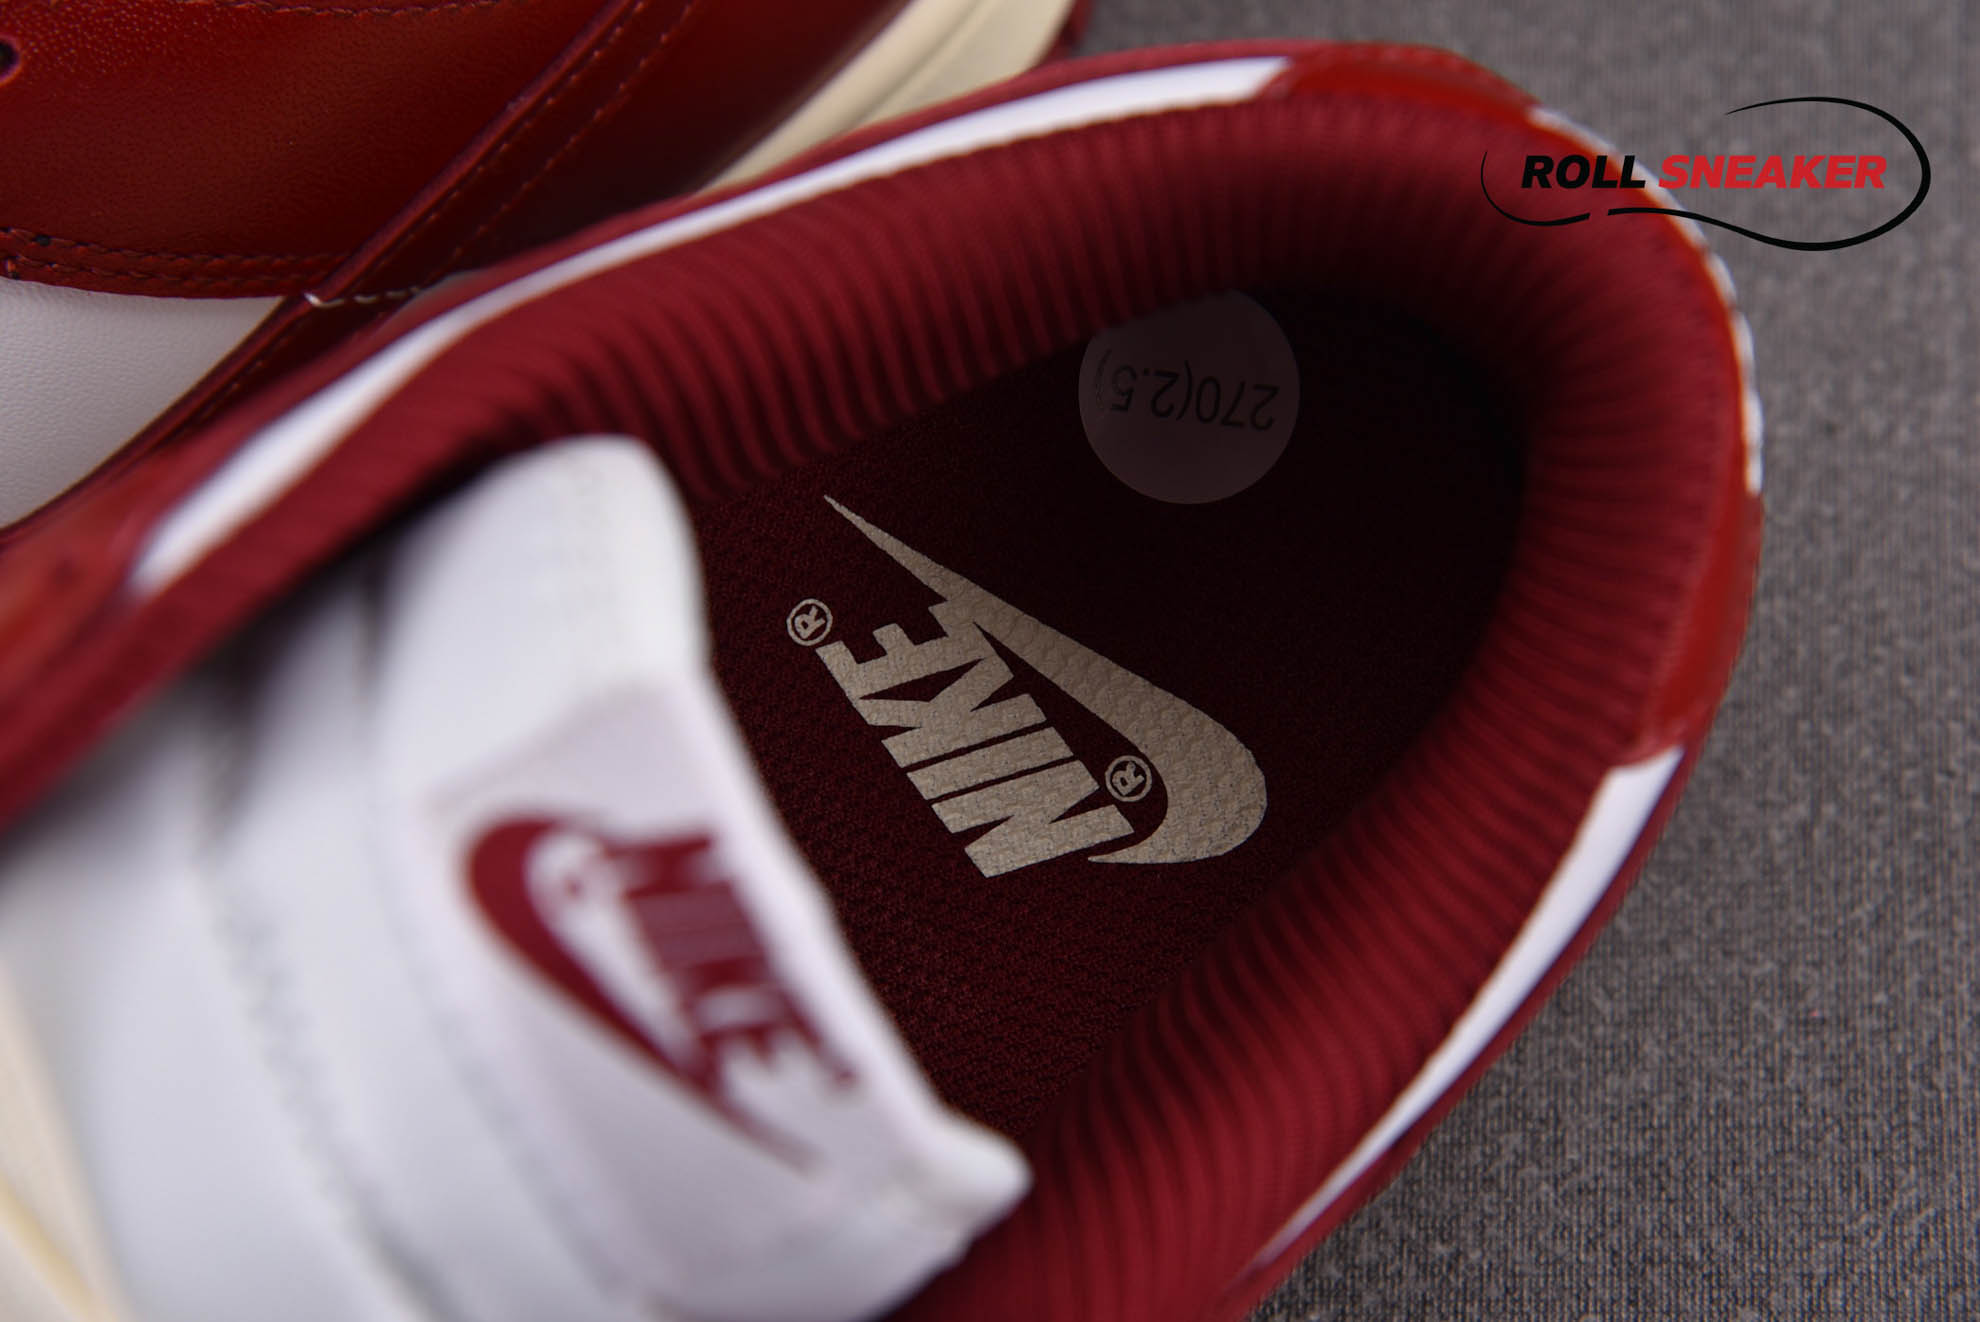 Nike Dunk Low Premium ‘Vintage Red’